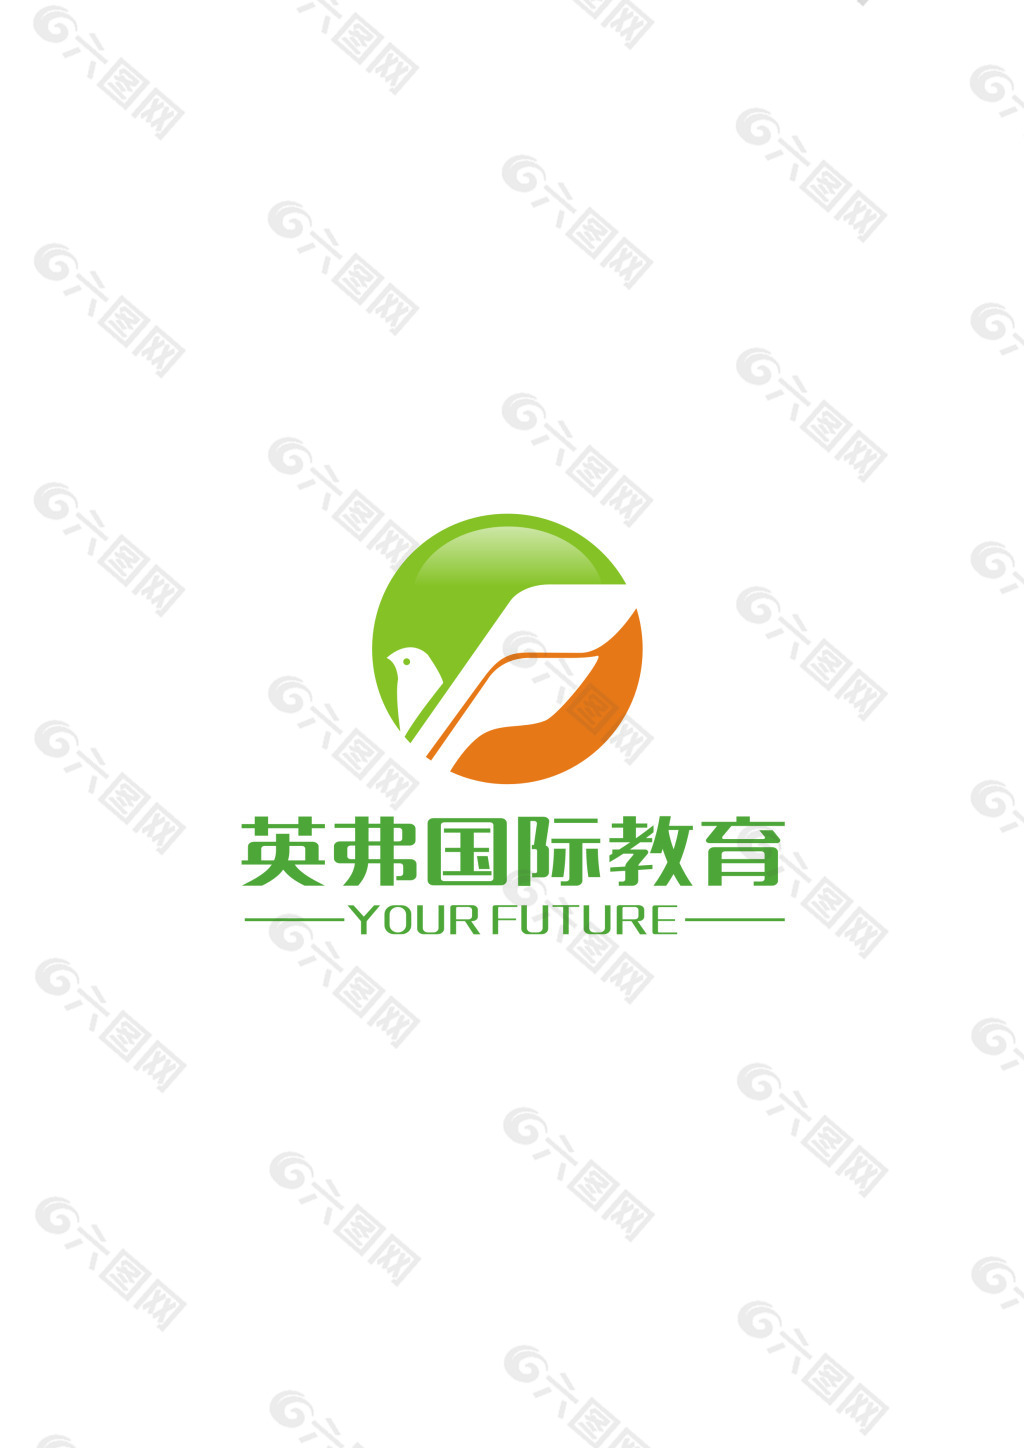 教育logo设计图片